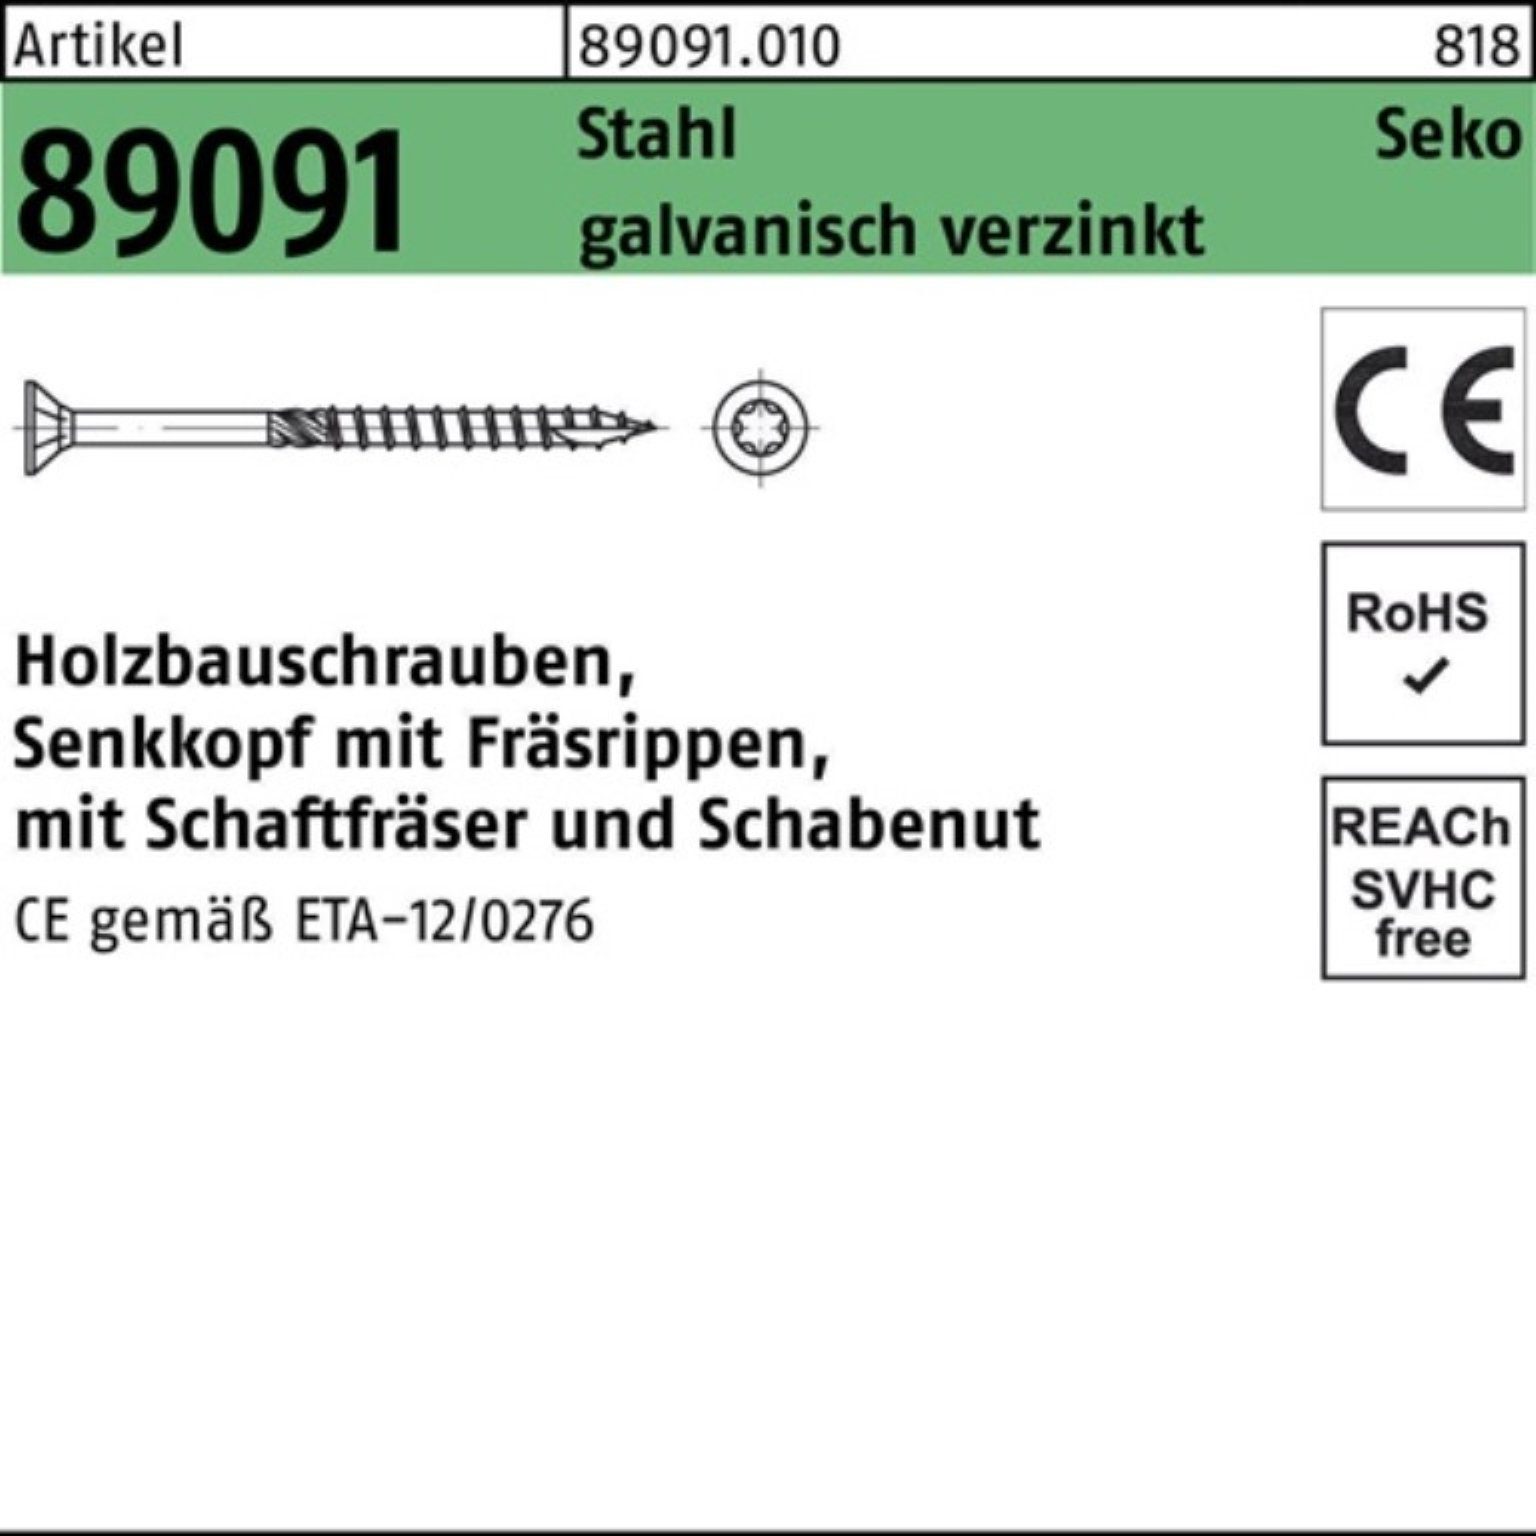 SEKO Pack Reyher ISR 89091 Stahl galv.verz. Holzbauschraube 5x30-T25 Holzbauschraube 200er R